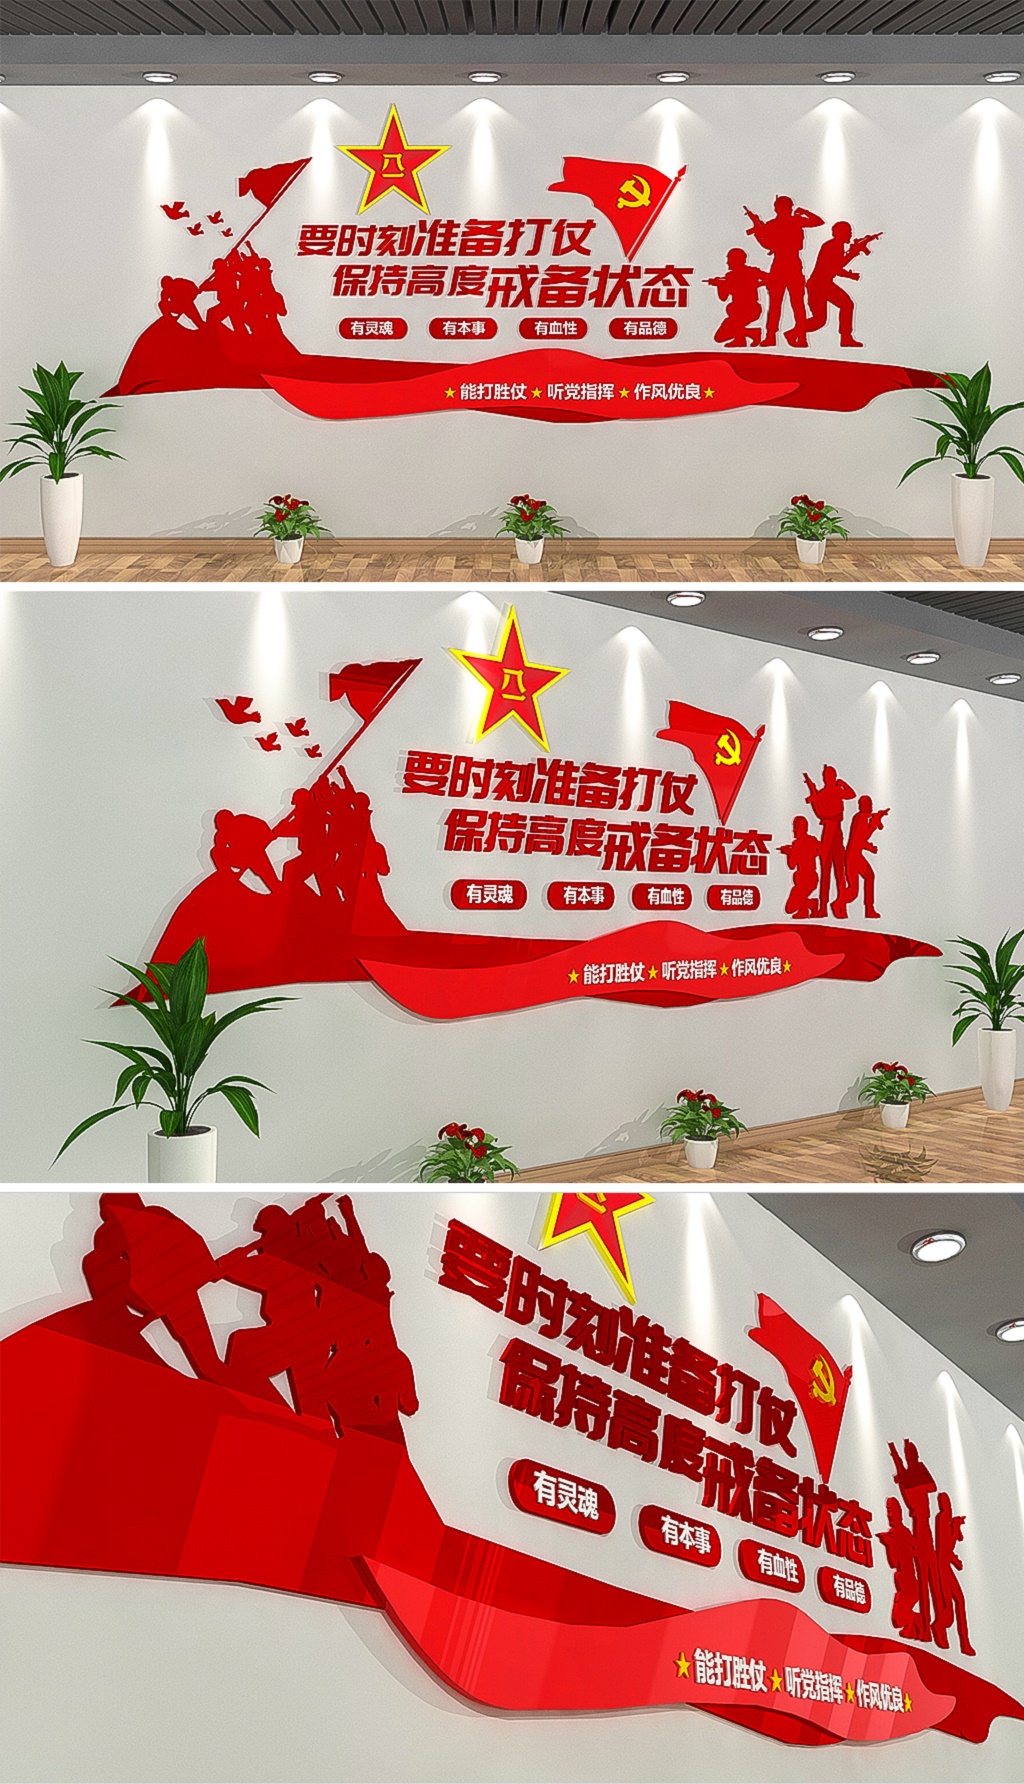 中国梦强军梦警营文化墙立即下载中国梦强军梦部队文化墙立即下载红色